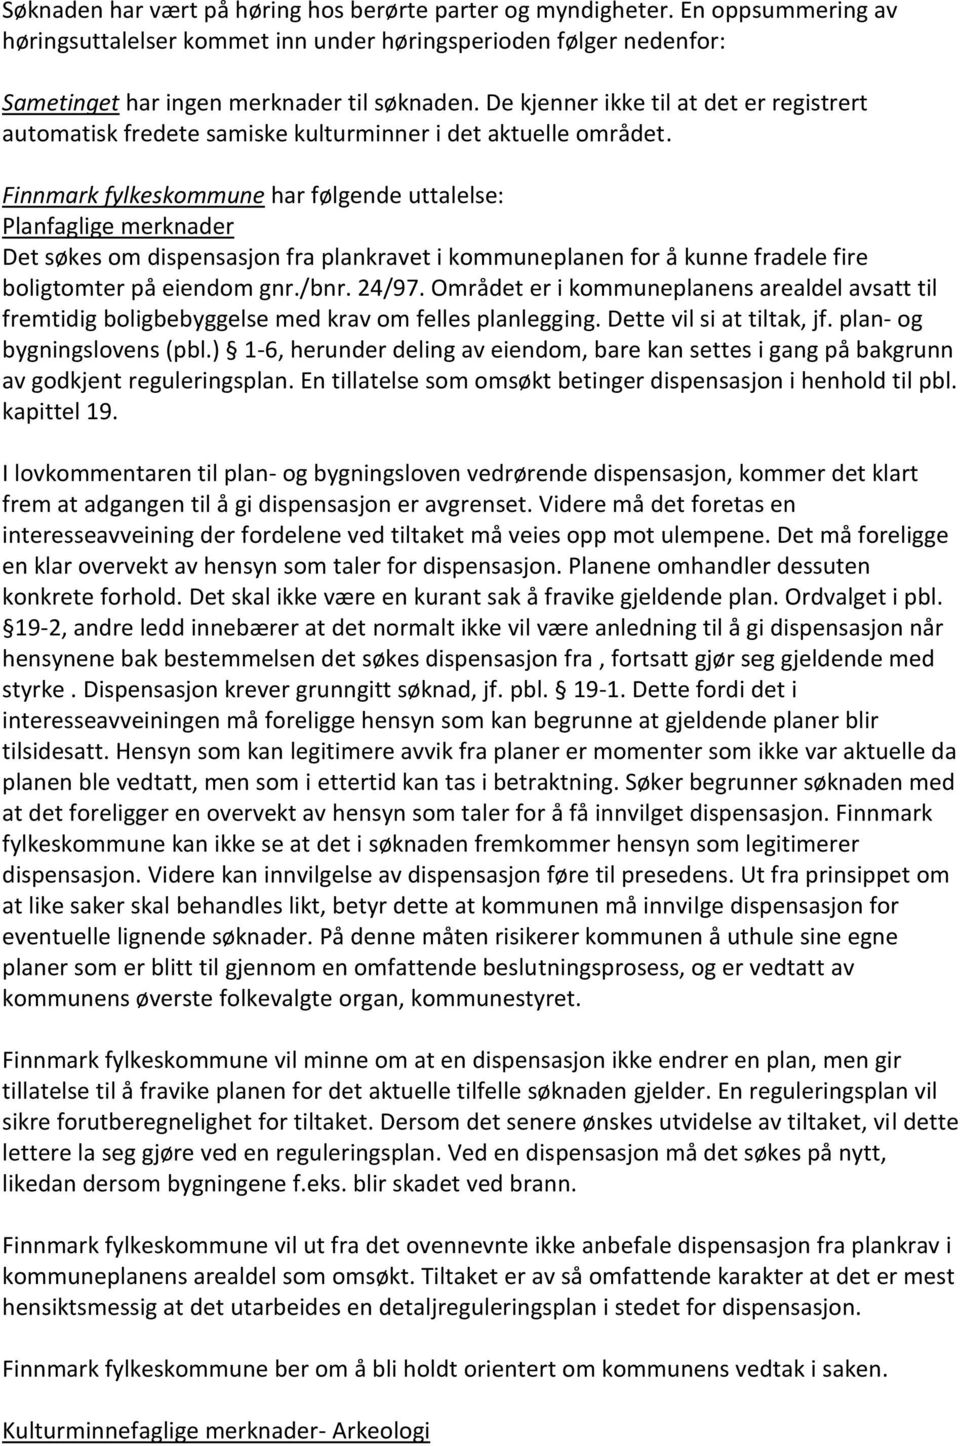 Finnmark fylkeskommune har følgende uttalelse: Planfaglige merknader Det søkes om dispensasjon fra plankravet i kommuneplanen for å kunne fradele fire boligtomter på eiendom gnr./bnr. 24/97.